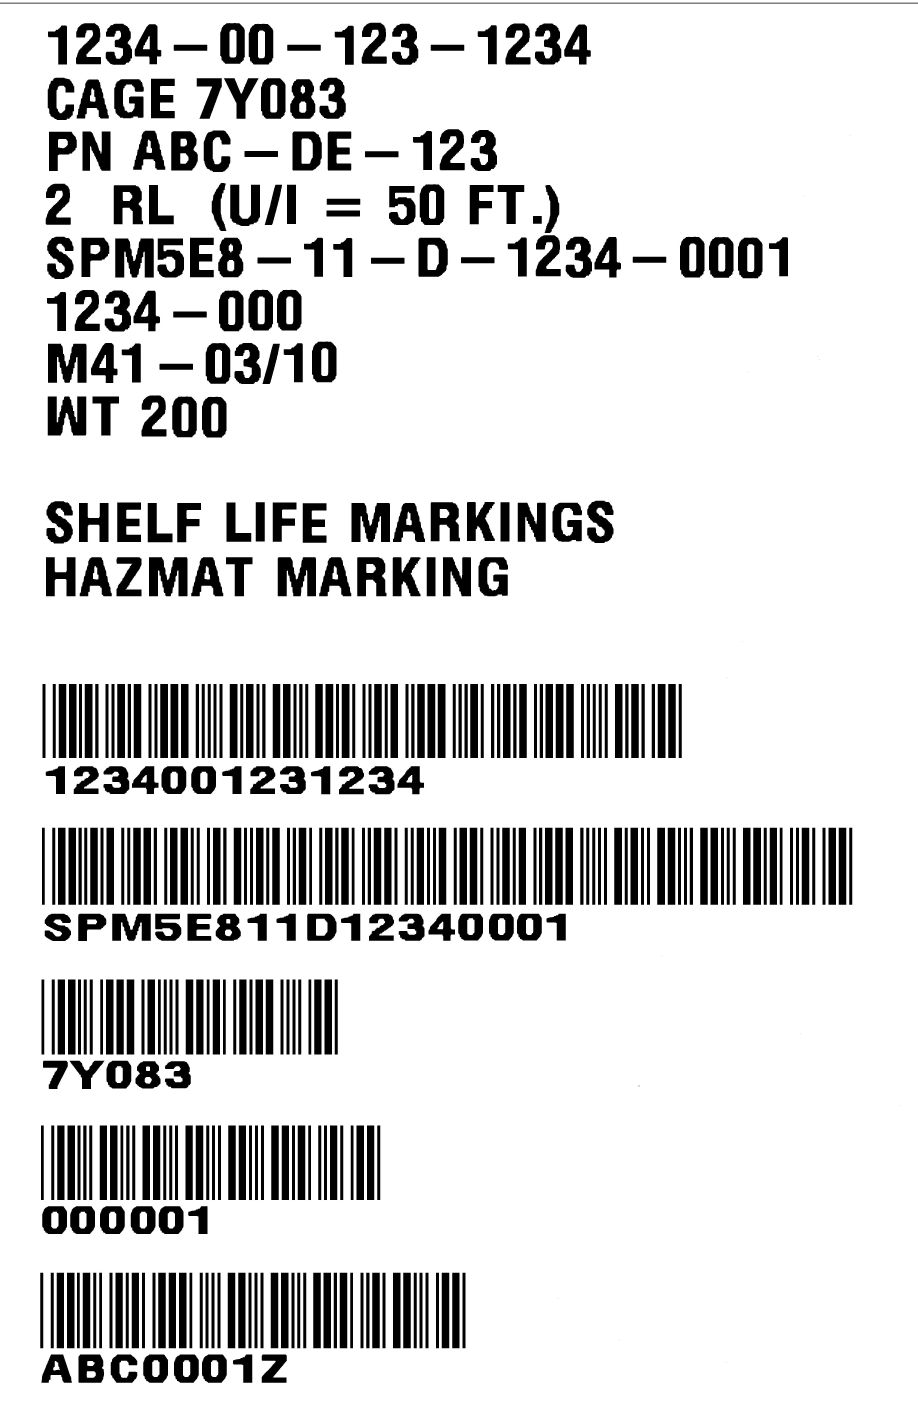 External Carton Label